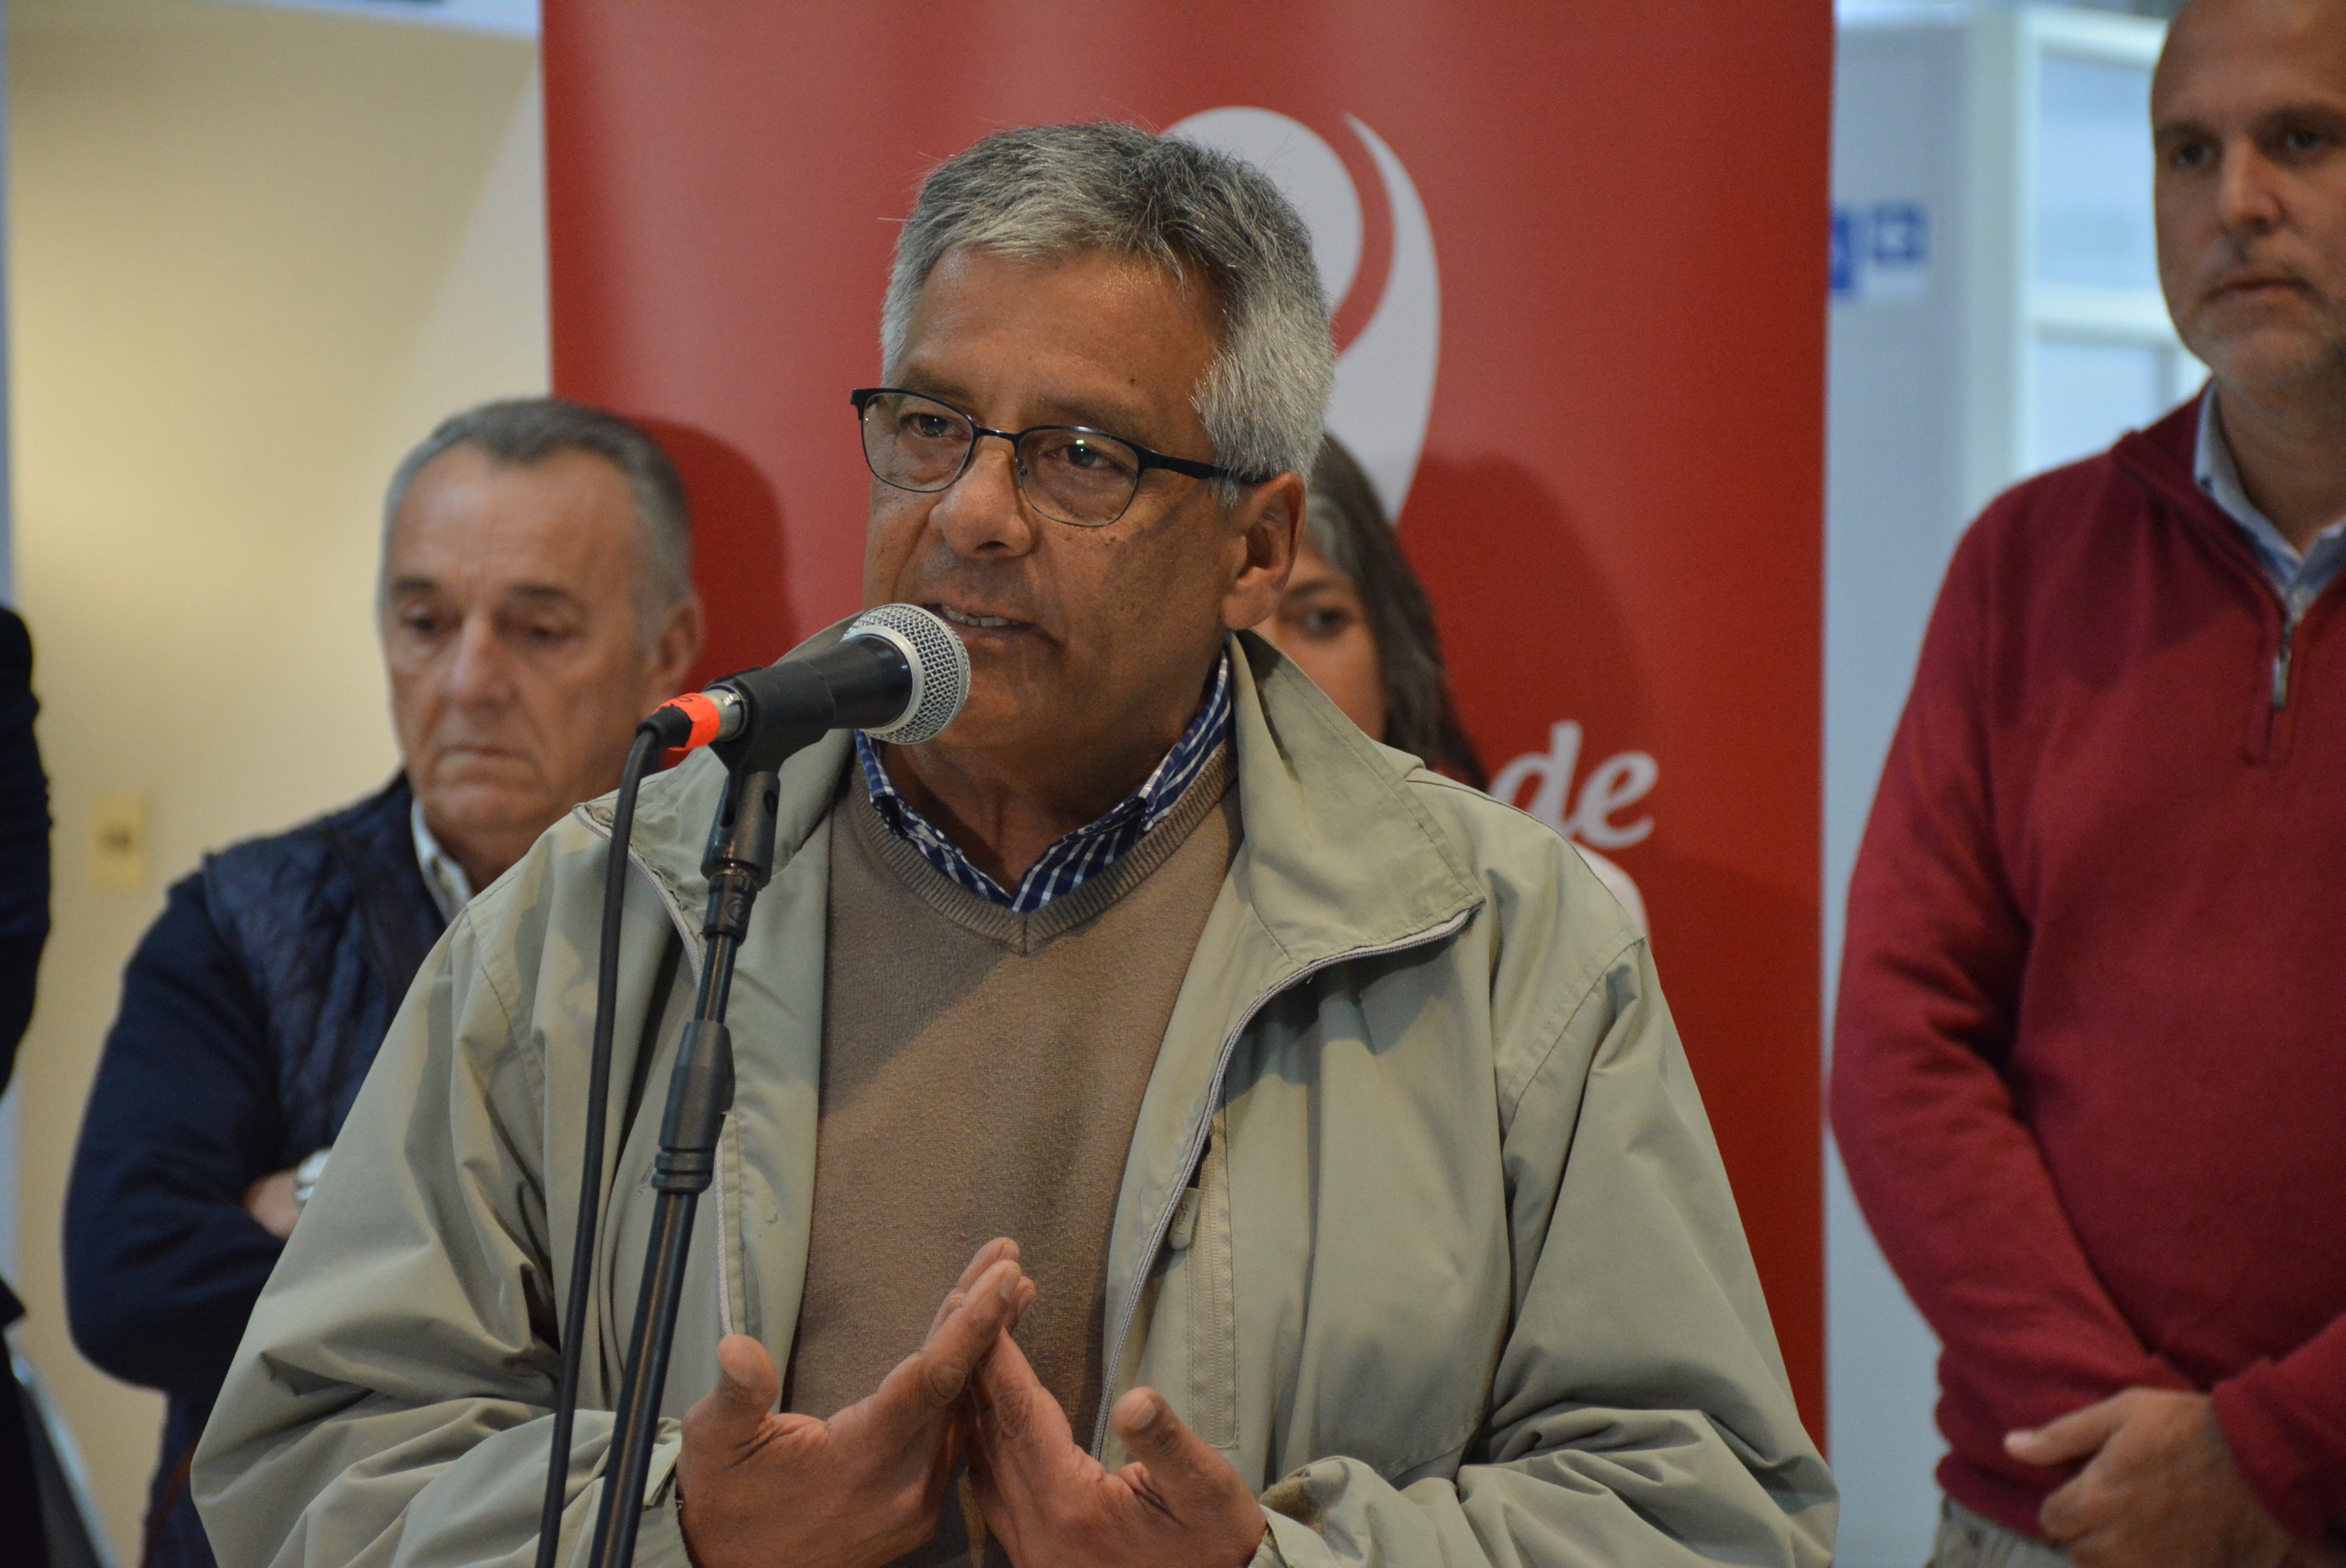 Alcalde de Canelones, Darío Pimienta, en el lanzamiento de la campaña de recolección de abrigos Invierno Solidario - ¡Al frío le ganamos entre todos! 